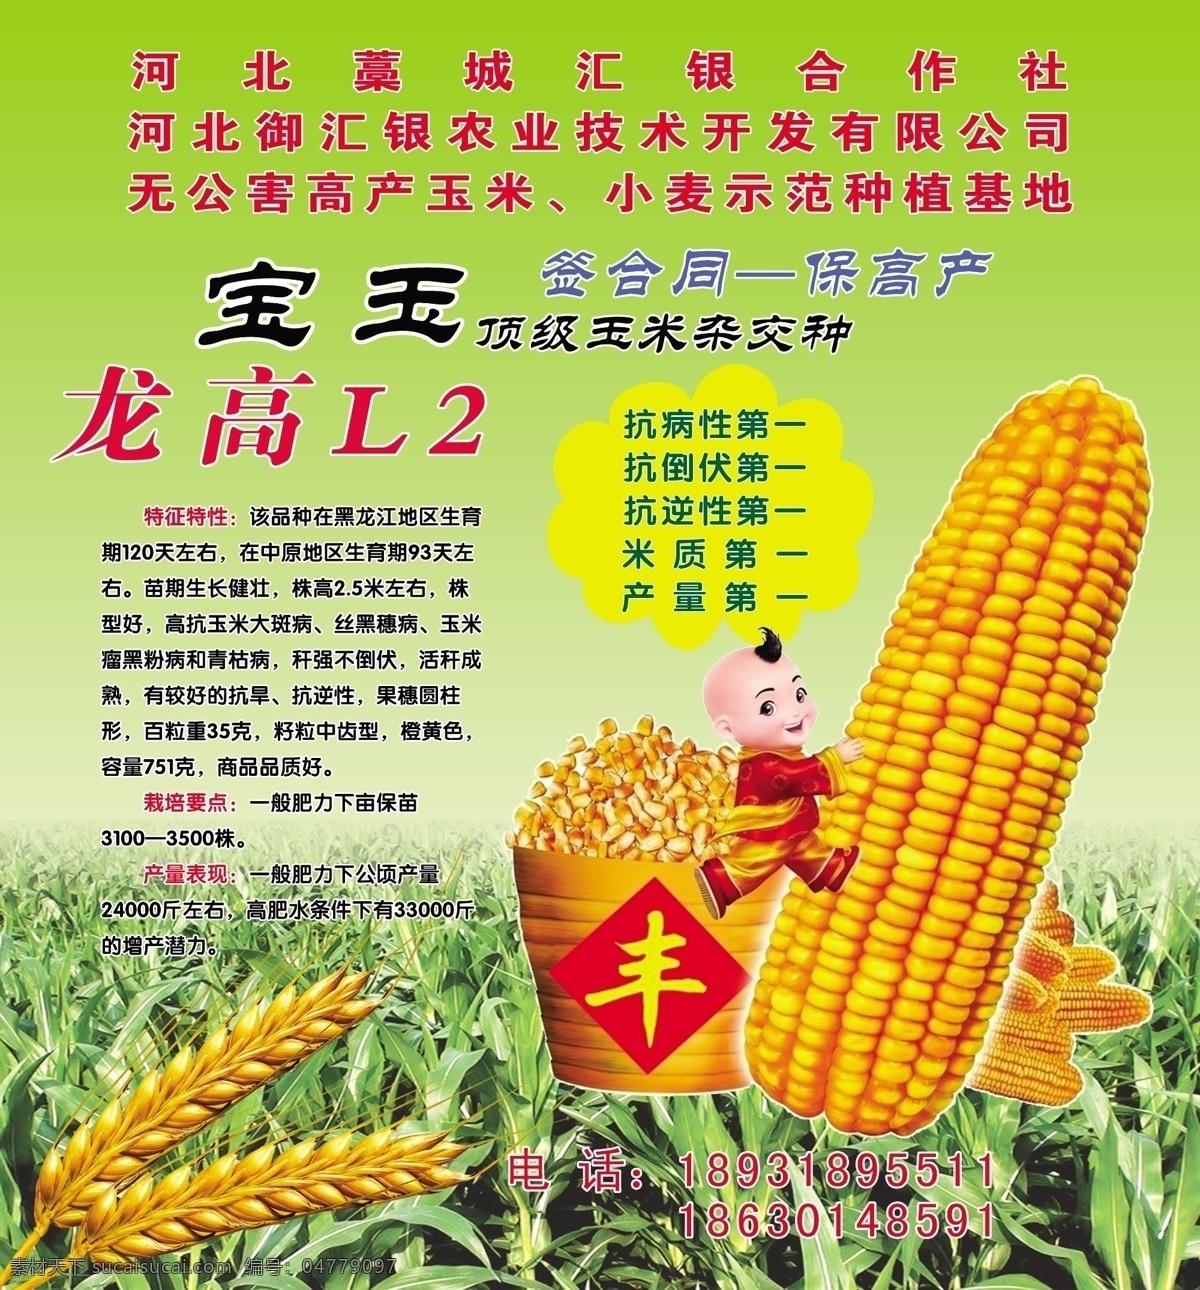 玉米海报 玉米 麦穗 宝玉 龙 高 种 绿色底 丰收 广告设计模板 源文件